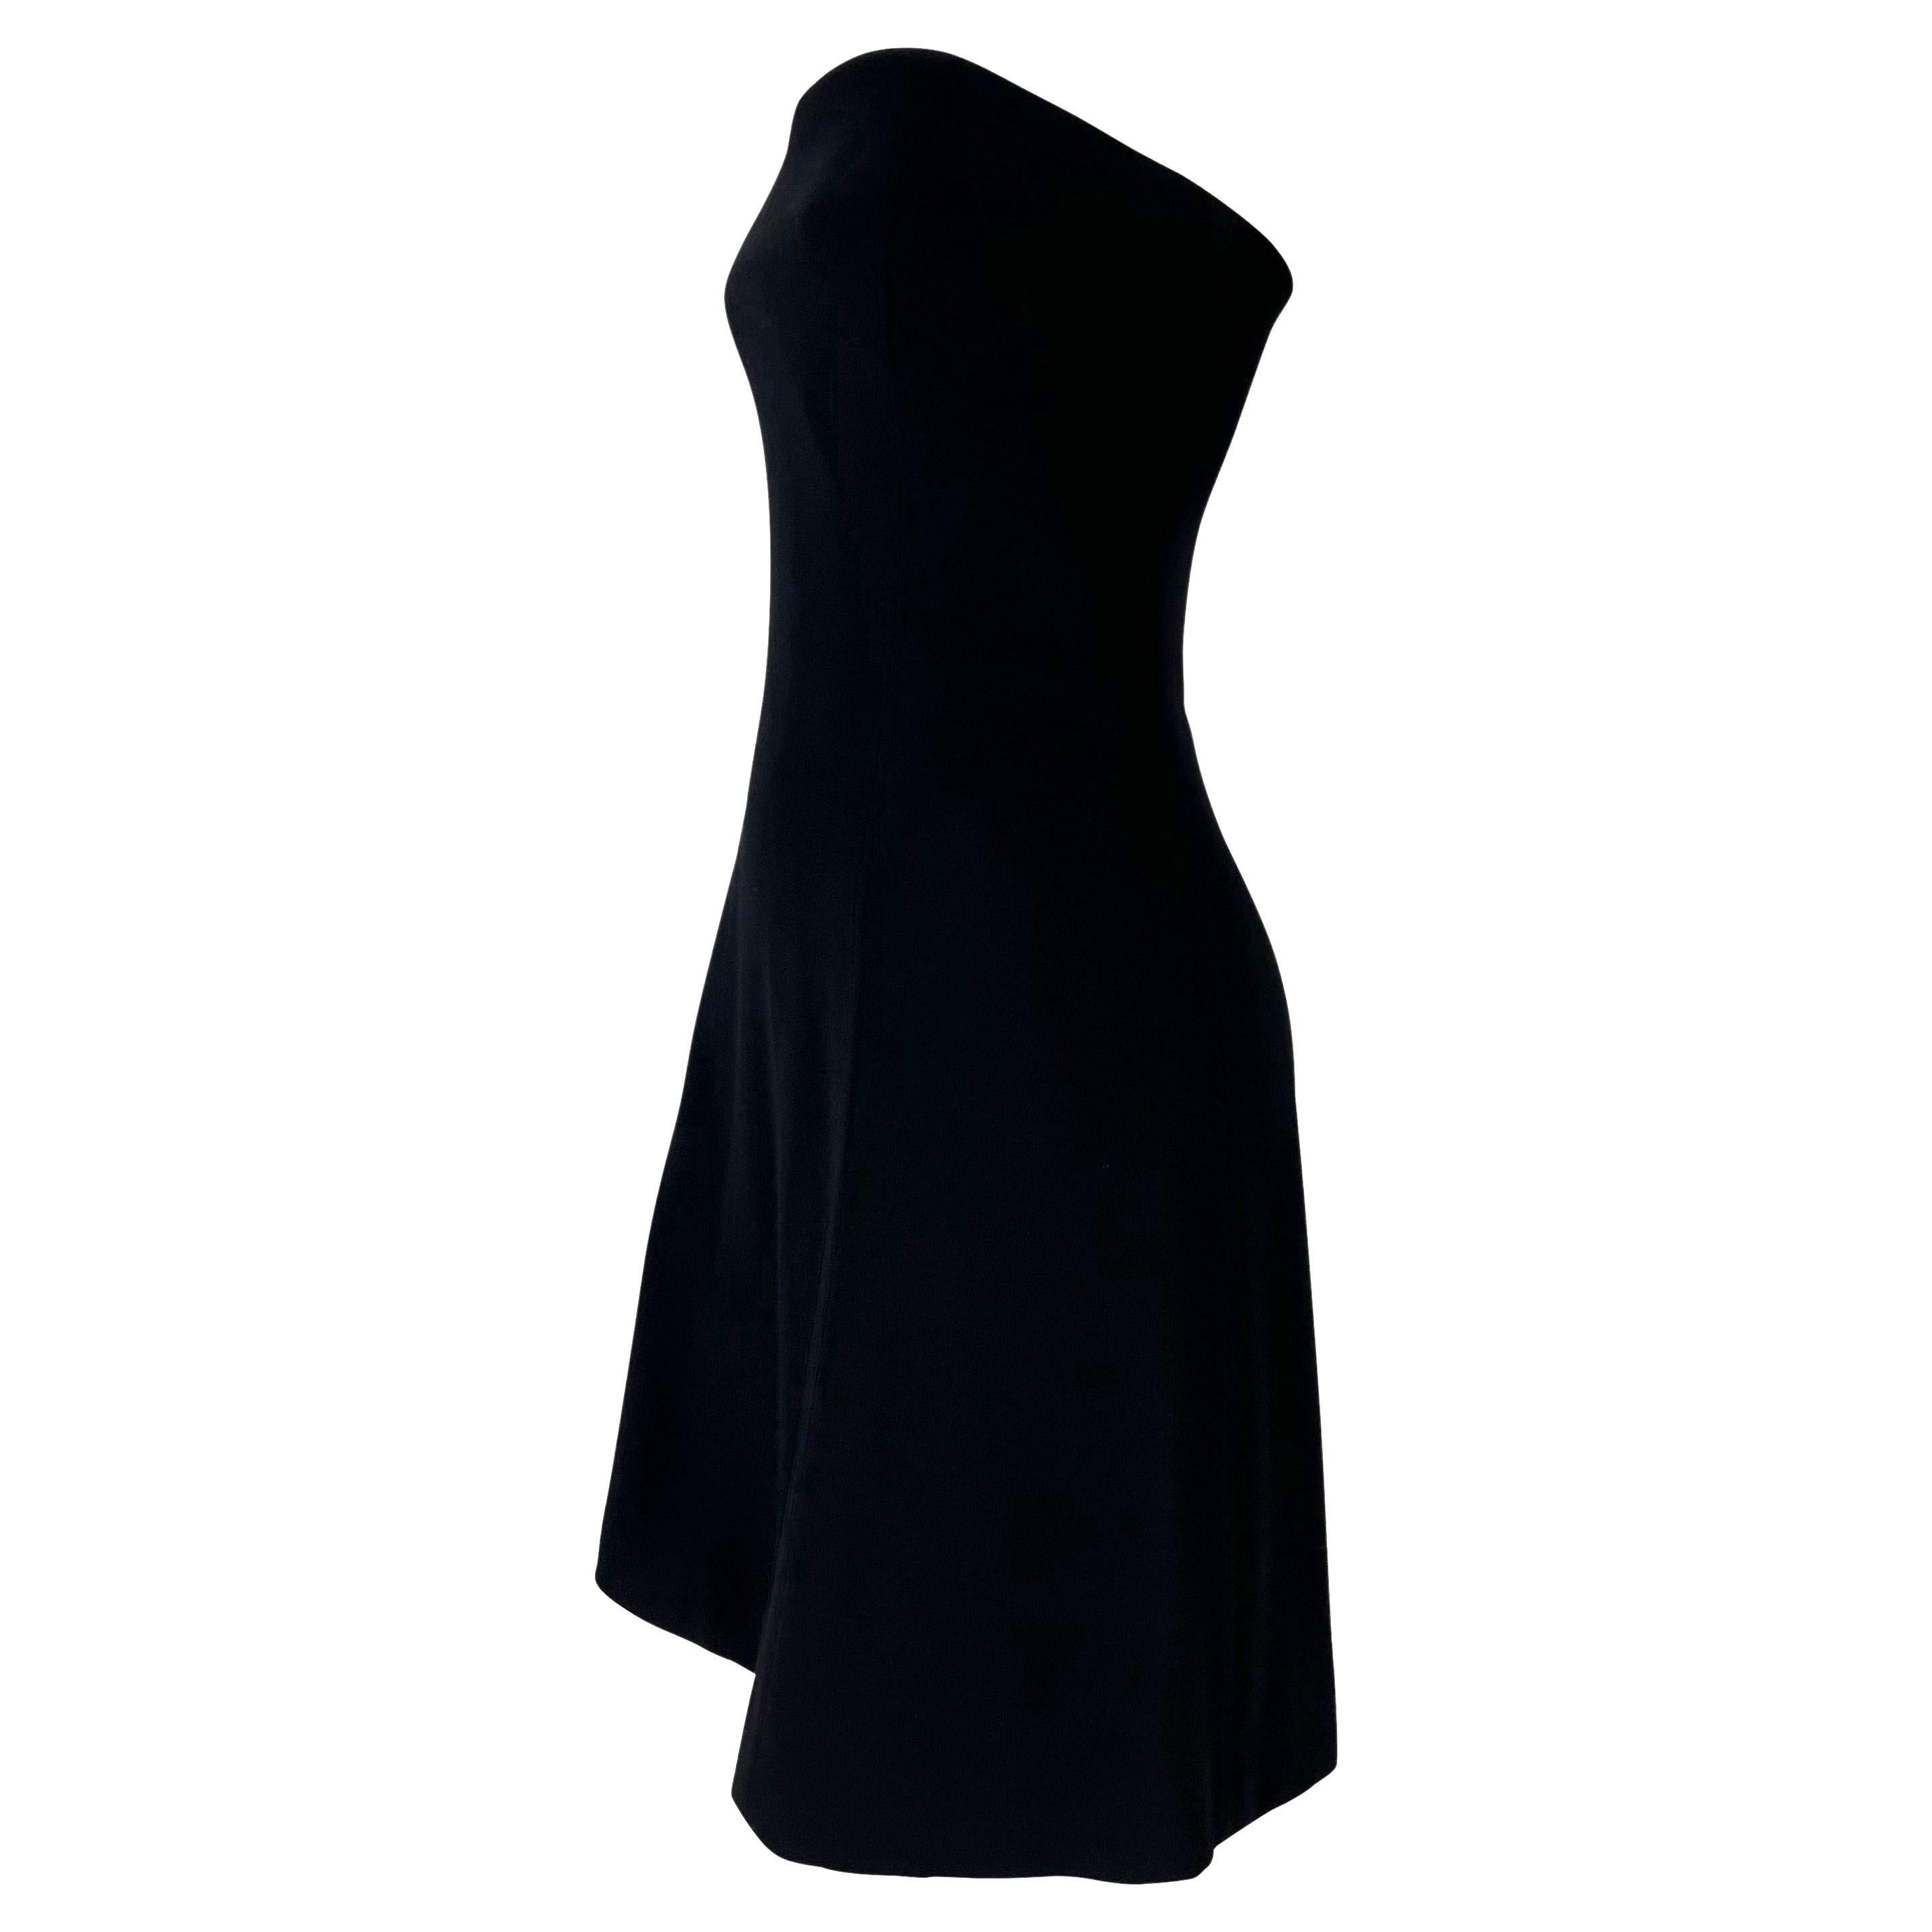 Voici la parfaite petite robe noire de Gianni Versace, créée par Gianni Versace. Issue de la collection printemps/été 1994, cette mini-robe sans bretelles est complétée par un corset interne. 

Mesures approximatives :
Taille - IT40
Buste de 32